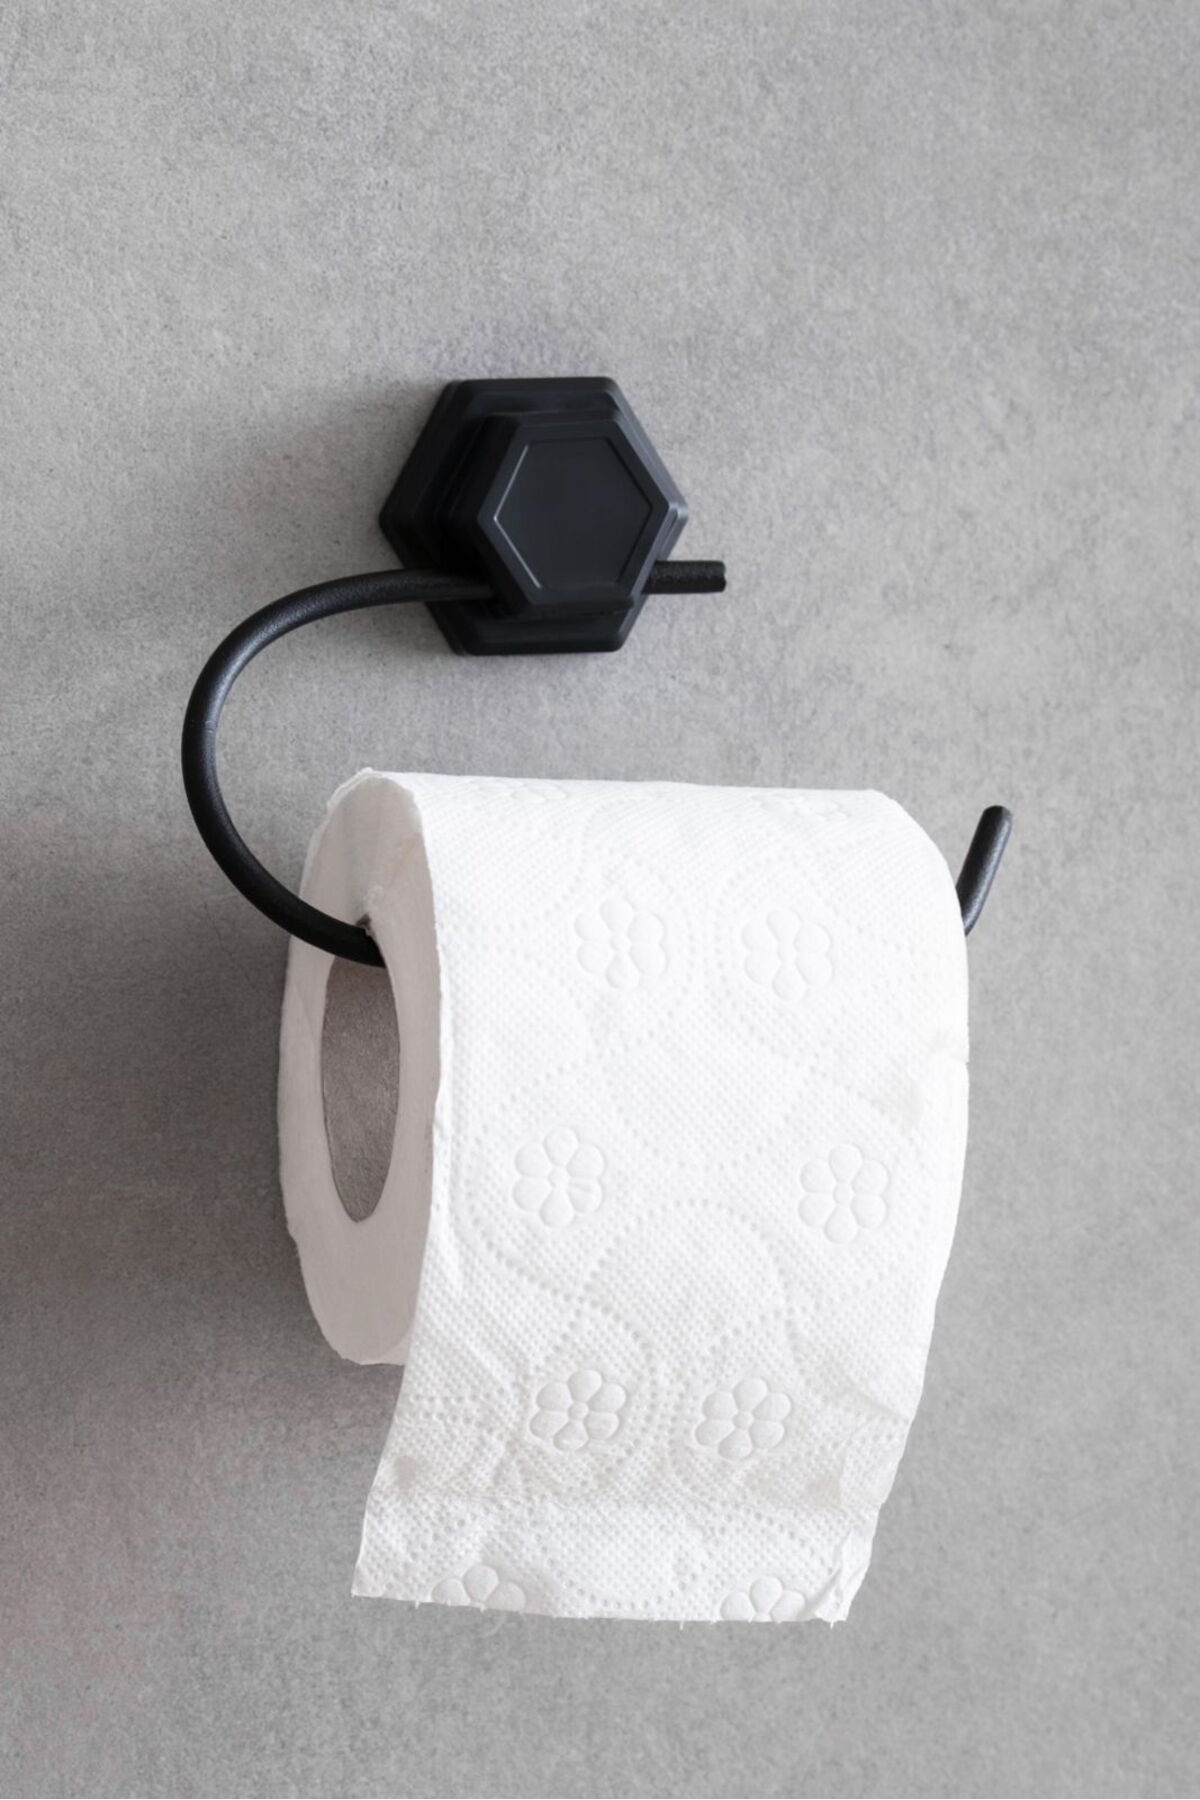 EVSTYLE Altıgen Yapışkanlı Siyah Açık Tuvalet Kağıtlığı Wc Kağıtlık Tutucu Peçetelik